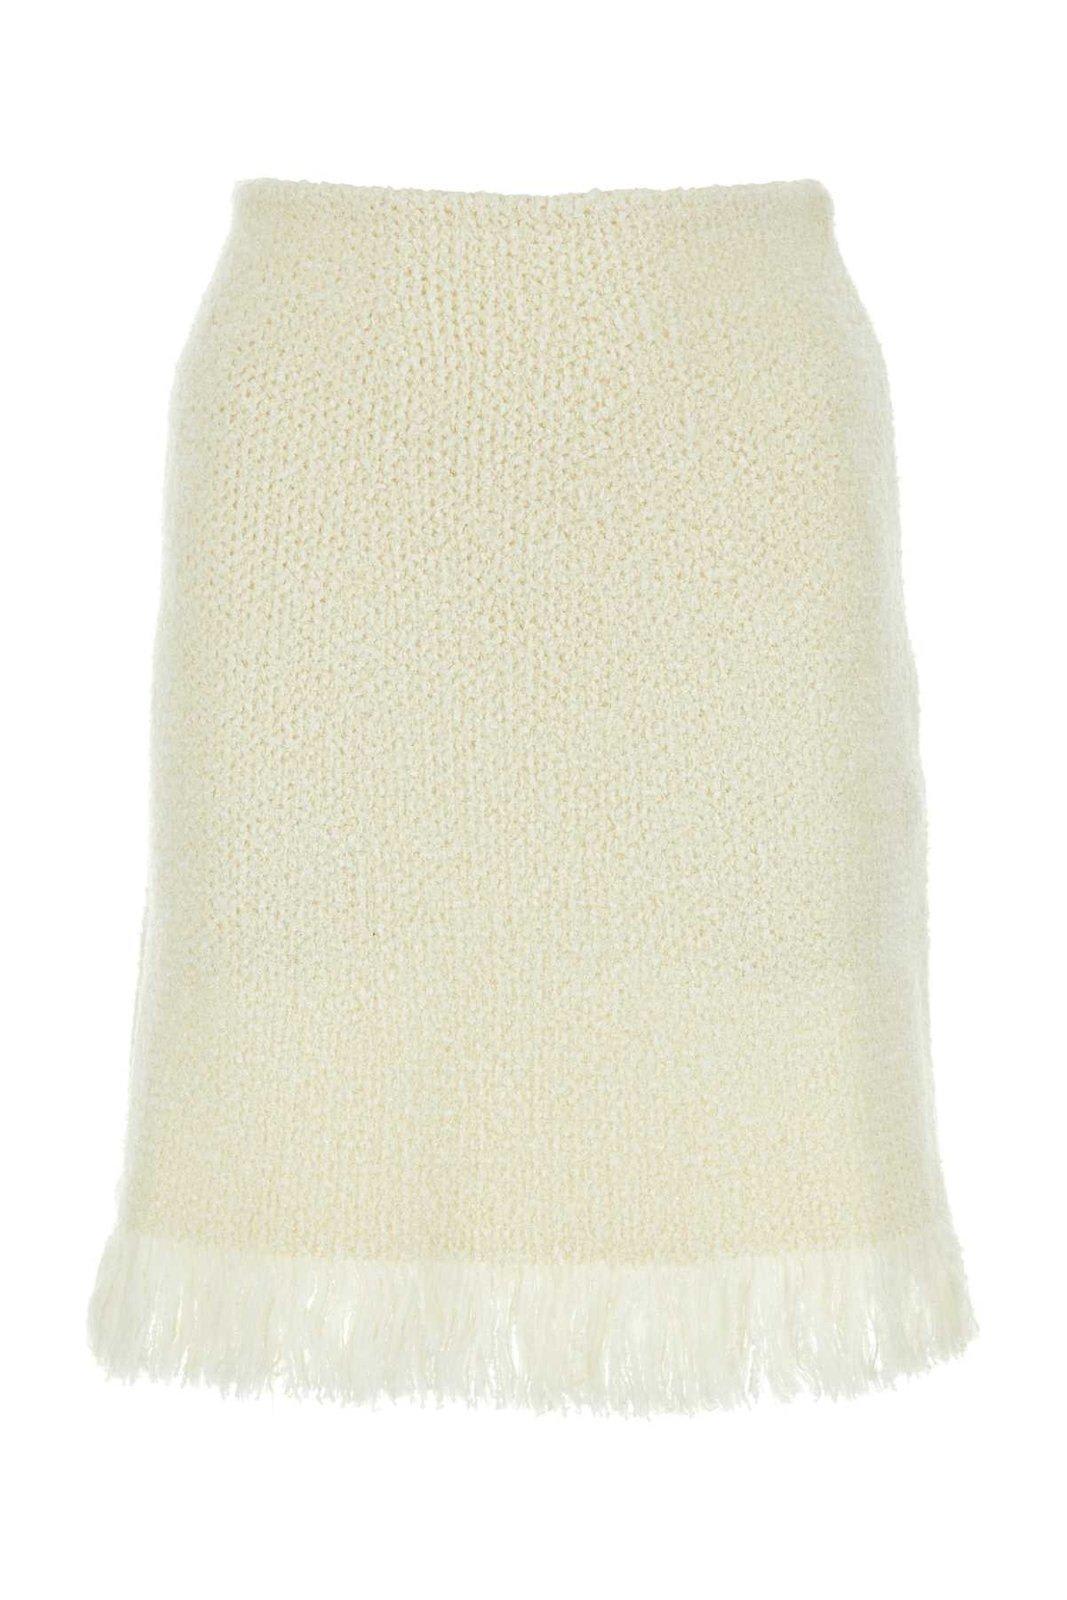 Chloé Knitted Fringed Mini Skirt